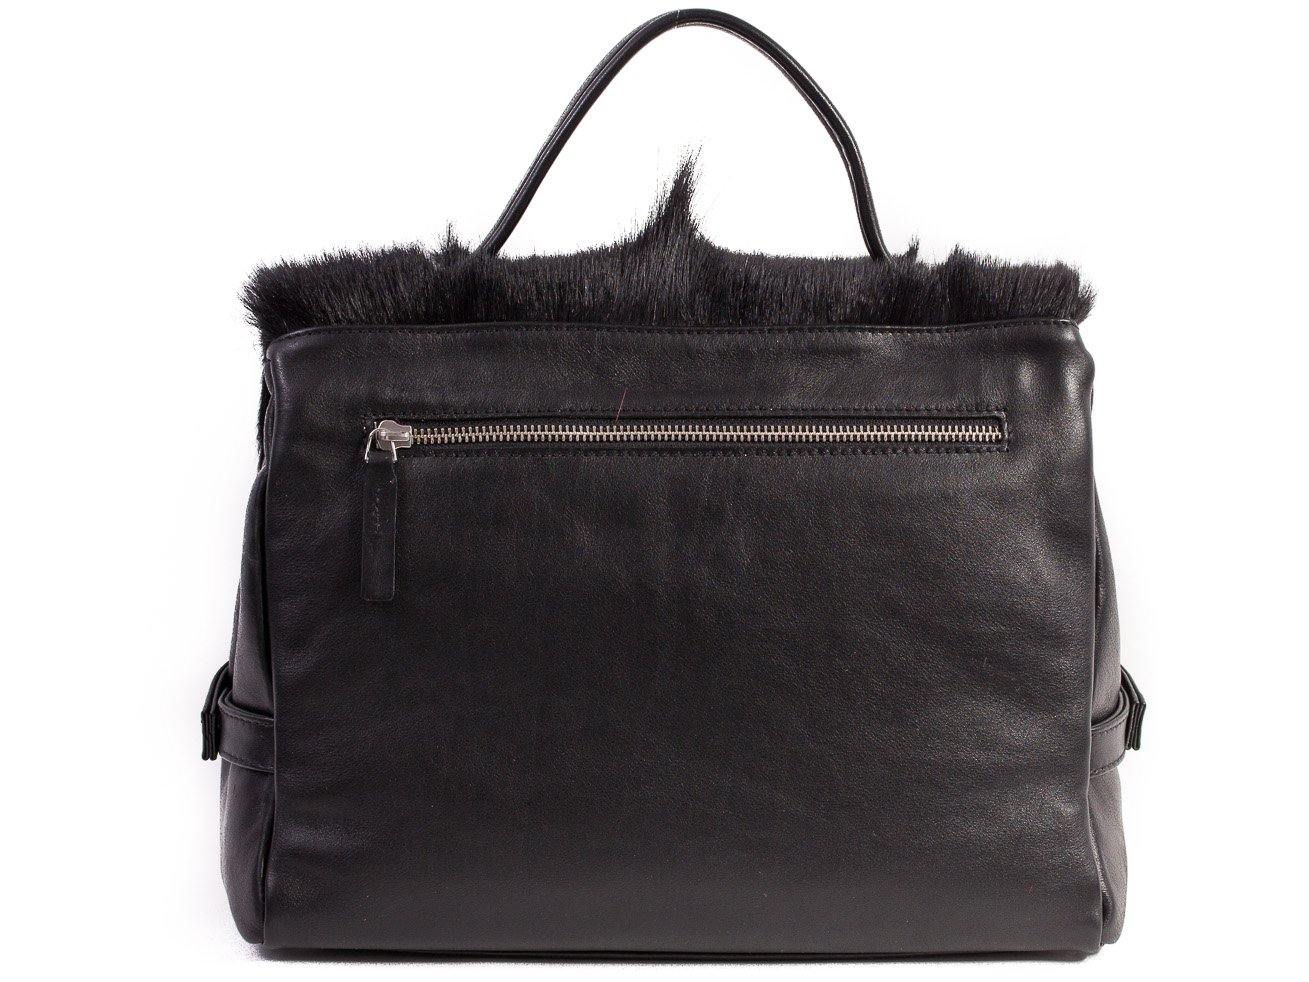 sherene melinda springbok hair-on-hide black leather smith tote bag Fan back